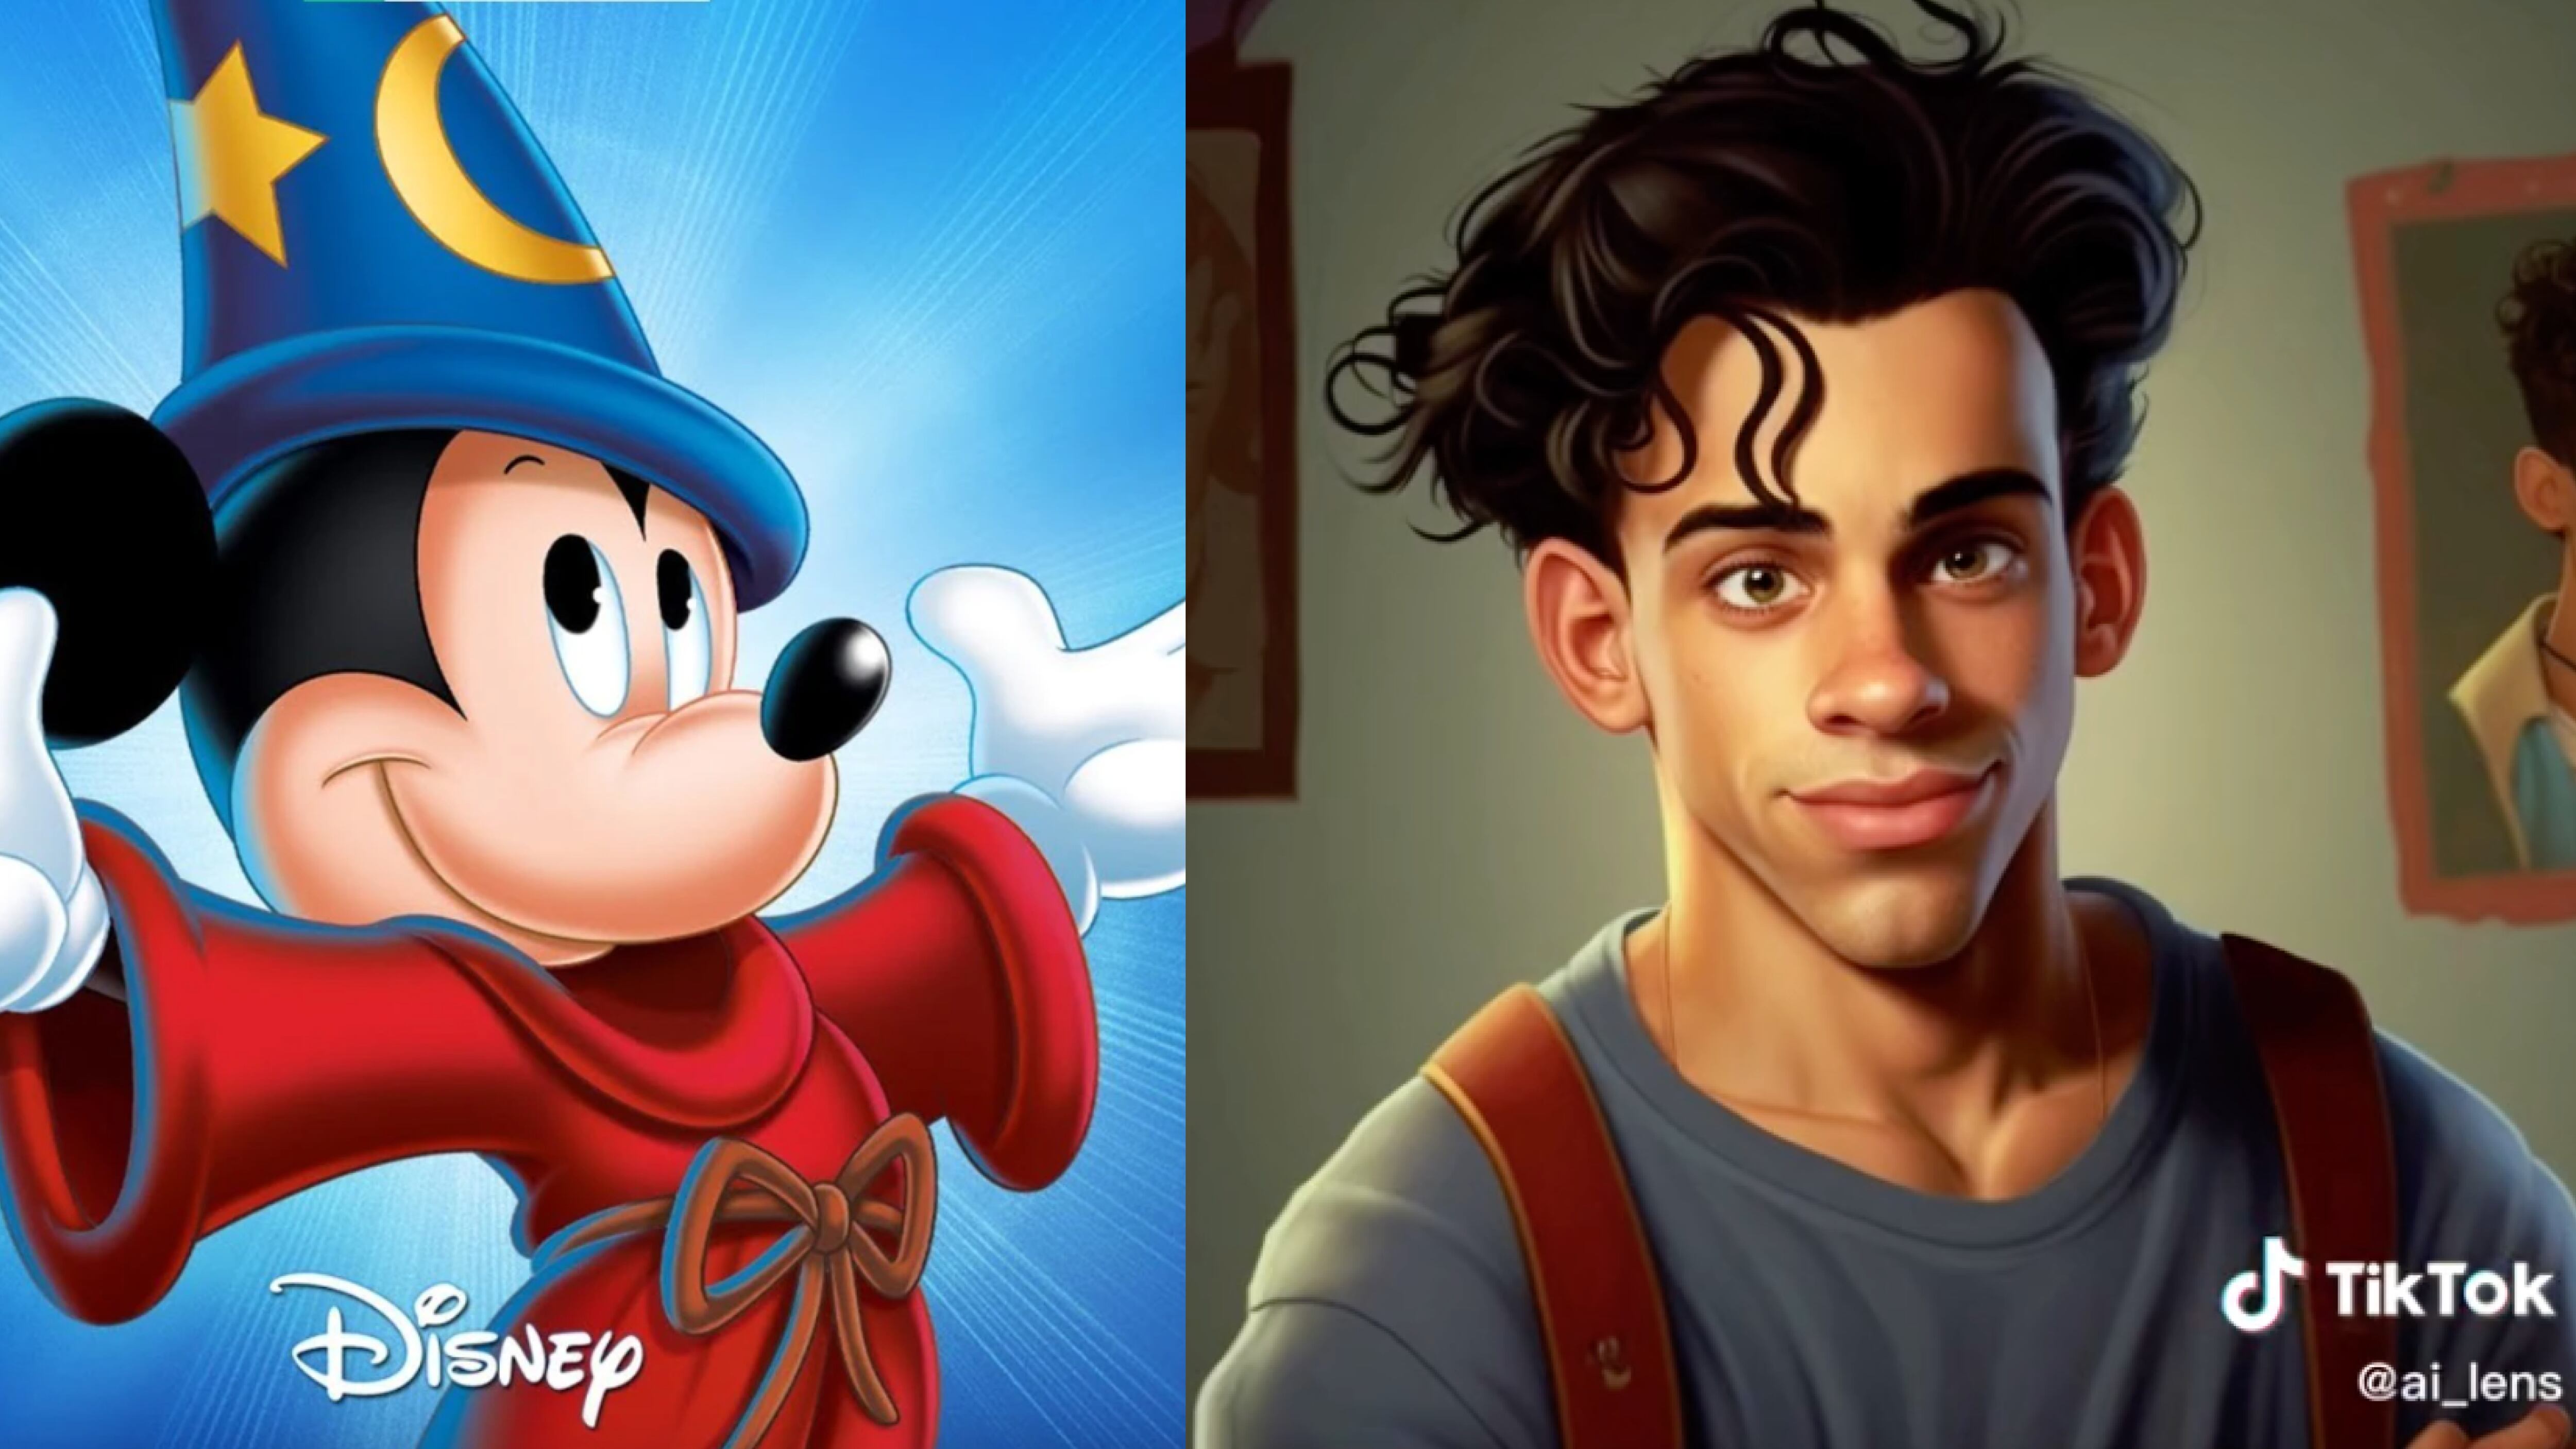 Así se ven los personajes de Mickey Mouse en la vida real gracias a la Inteligencia Artificial